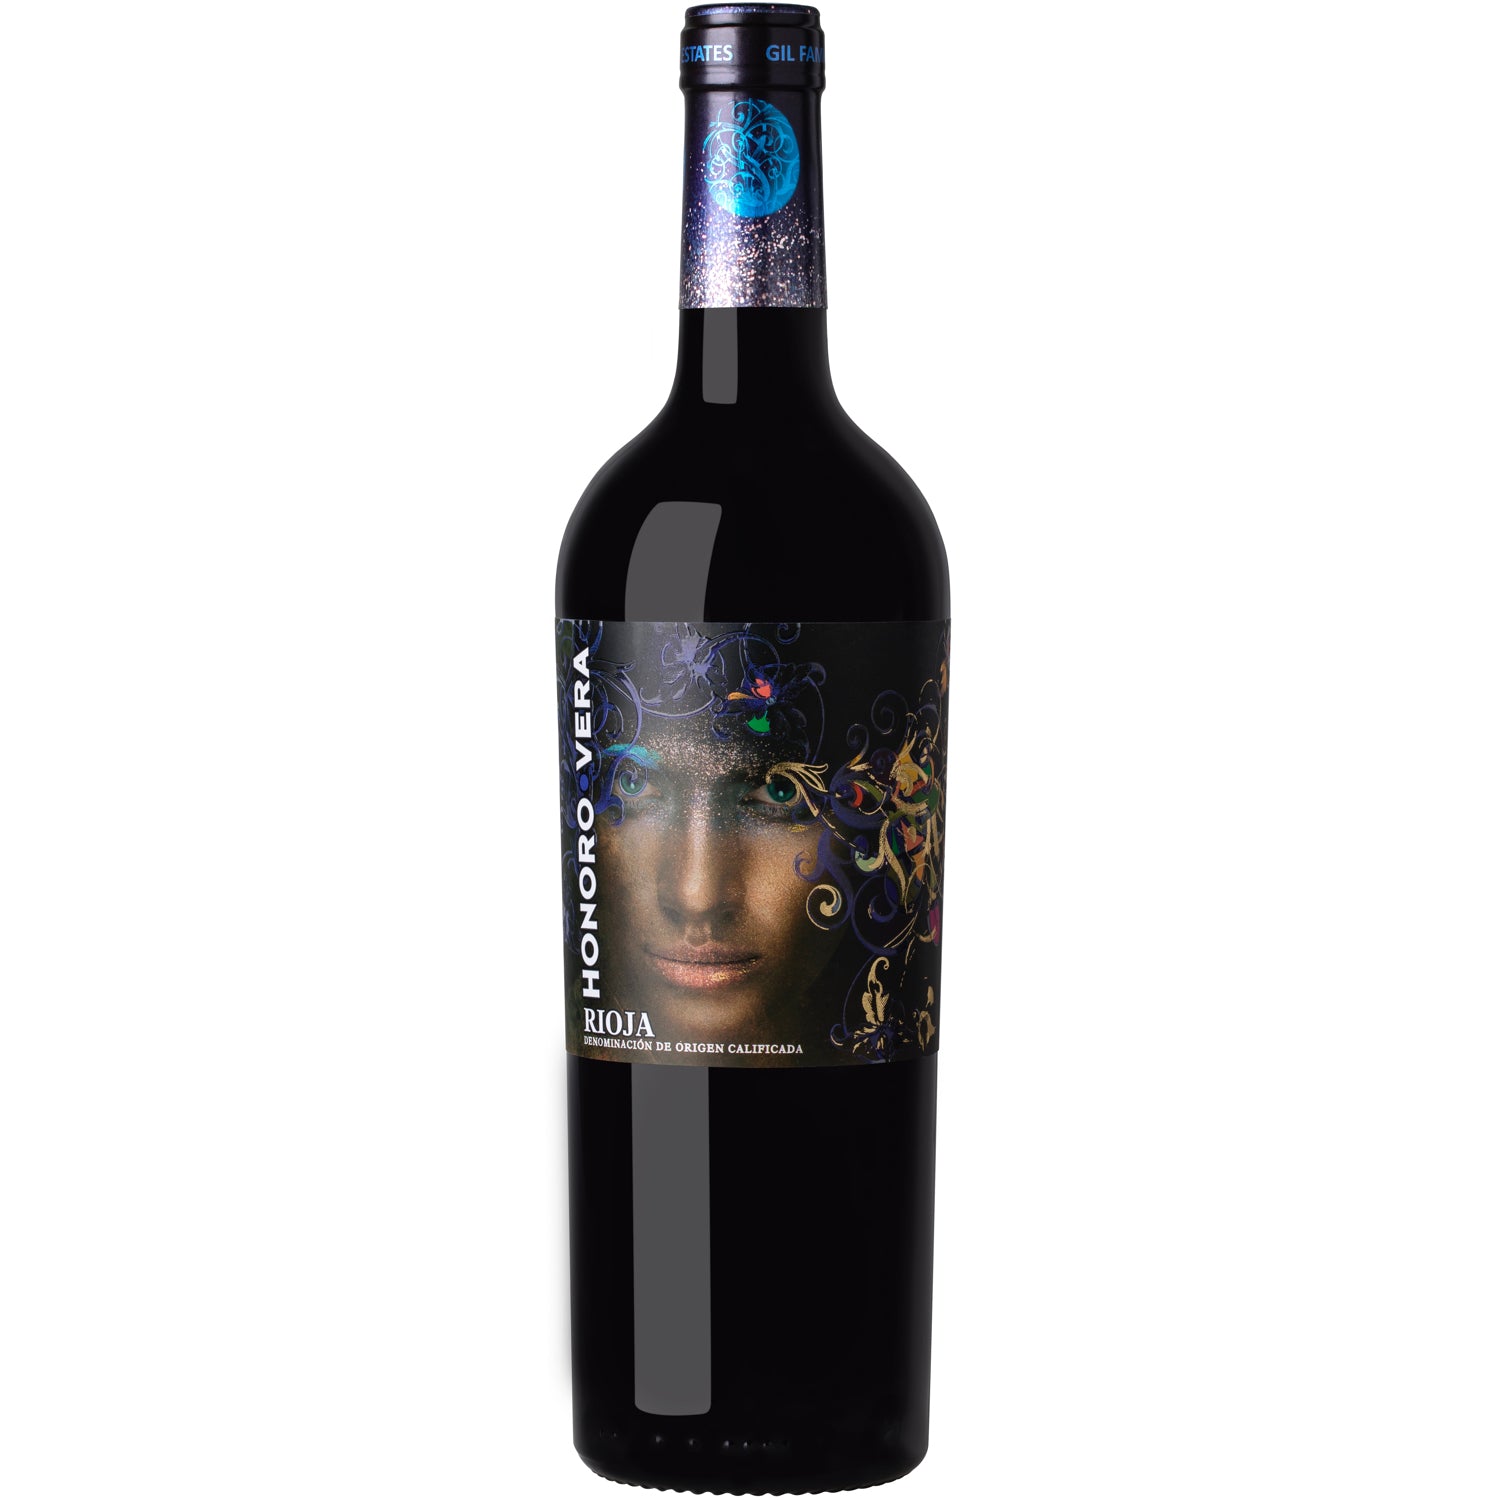 Honoro Vera Rioja [750ml]